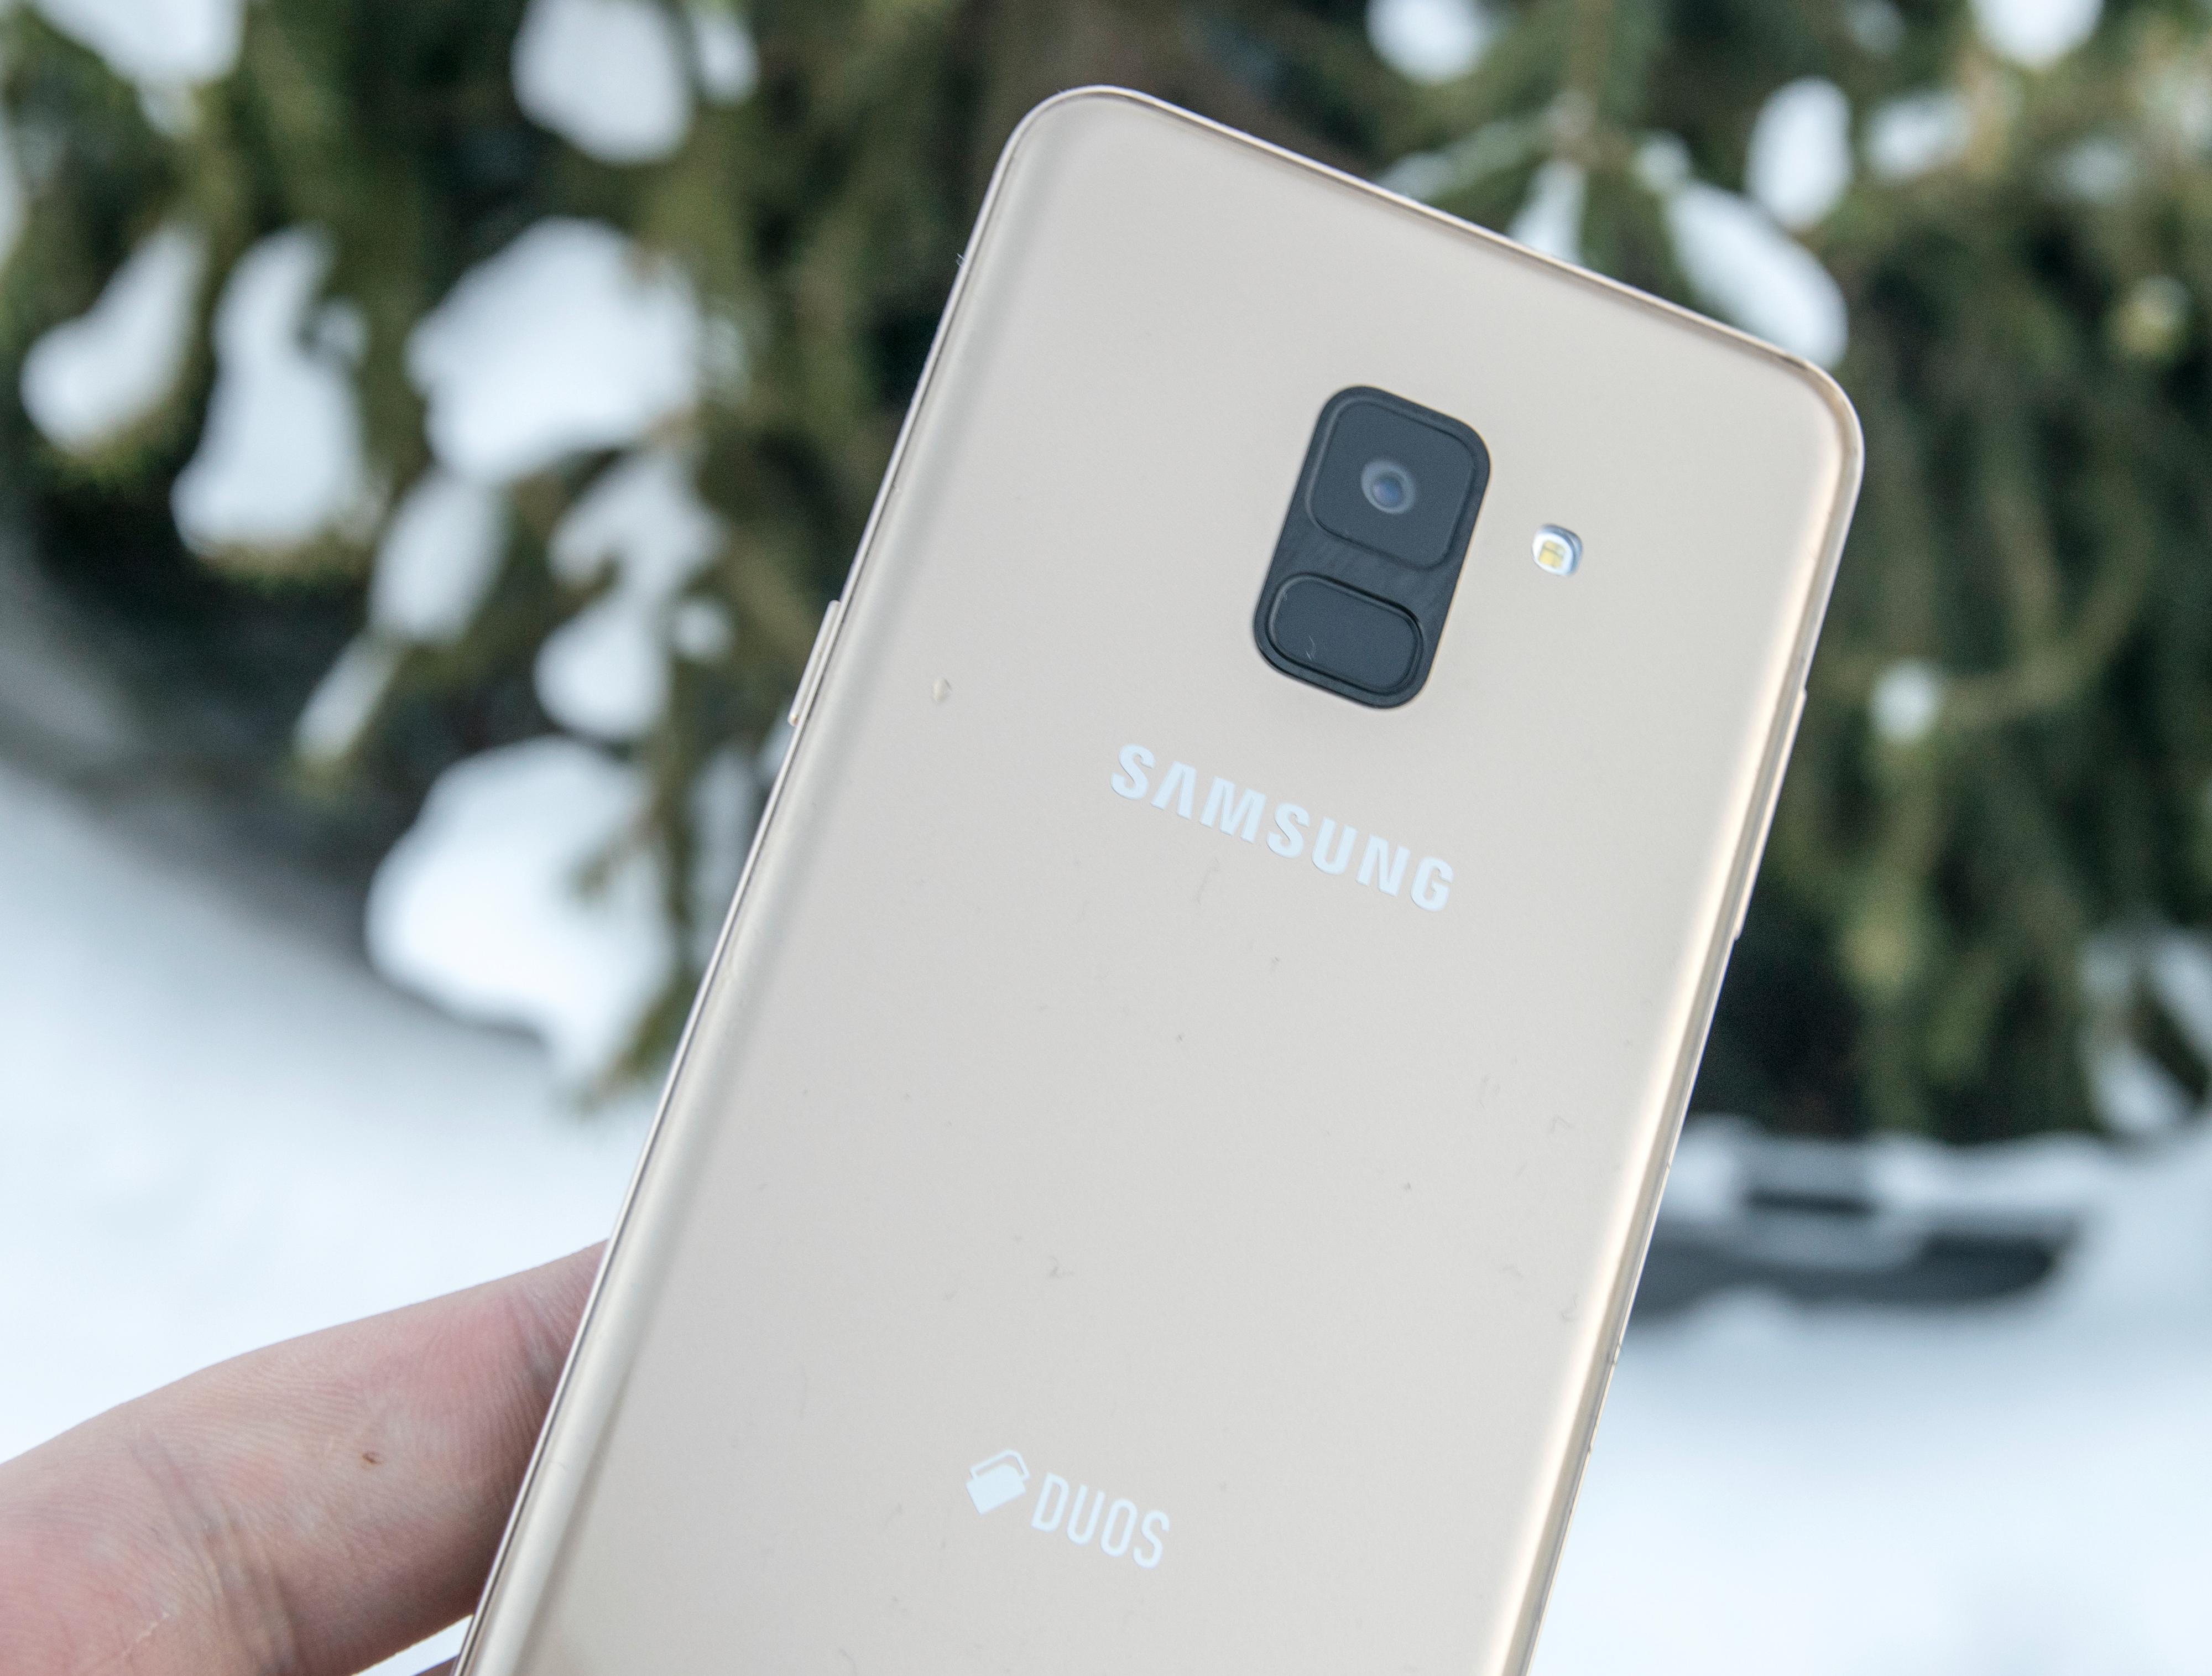 Fingerleseren er plassert på midten av baksiden. Det gjør Galaxy A8 enklere å åpne med pekefingeren enn toppmodellen S8, som har leseren som et søkk rett ved siden av kameraet.